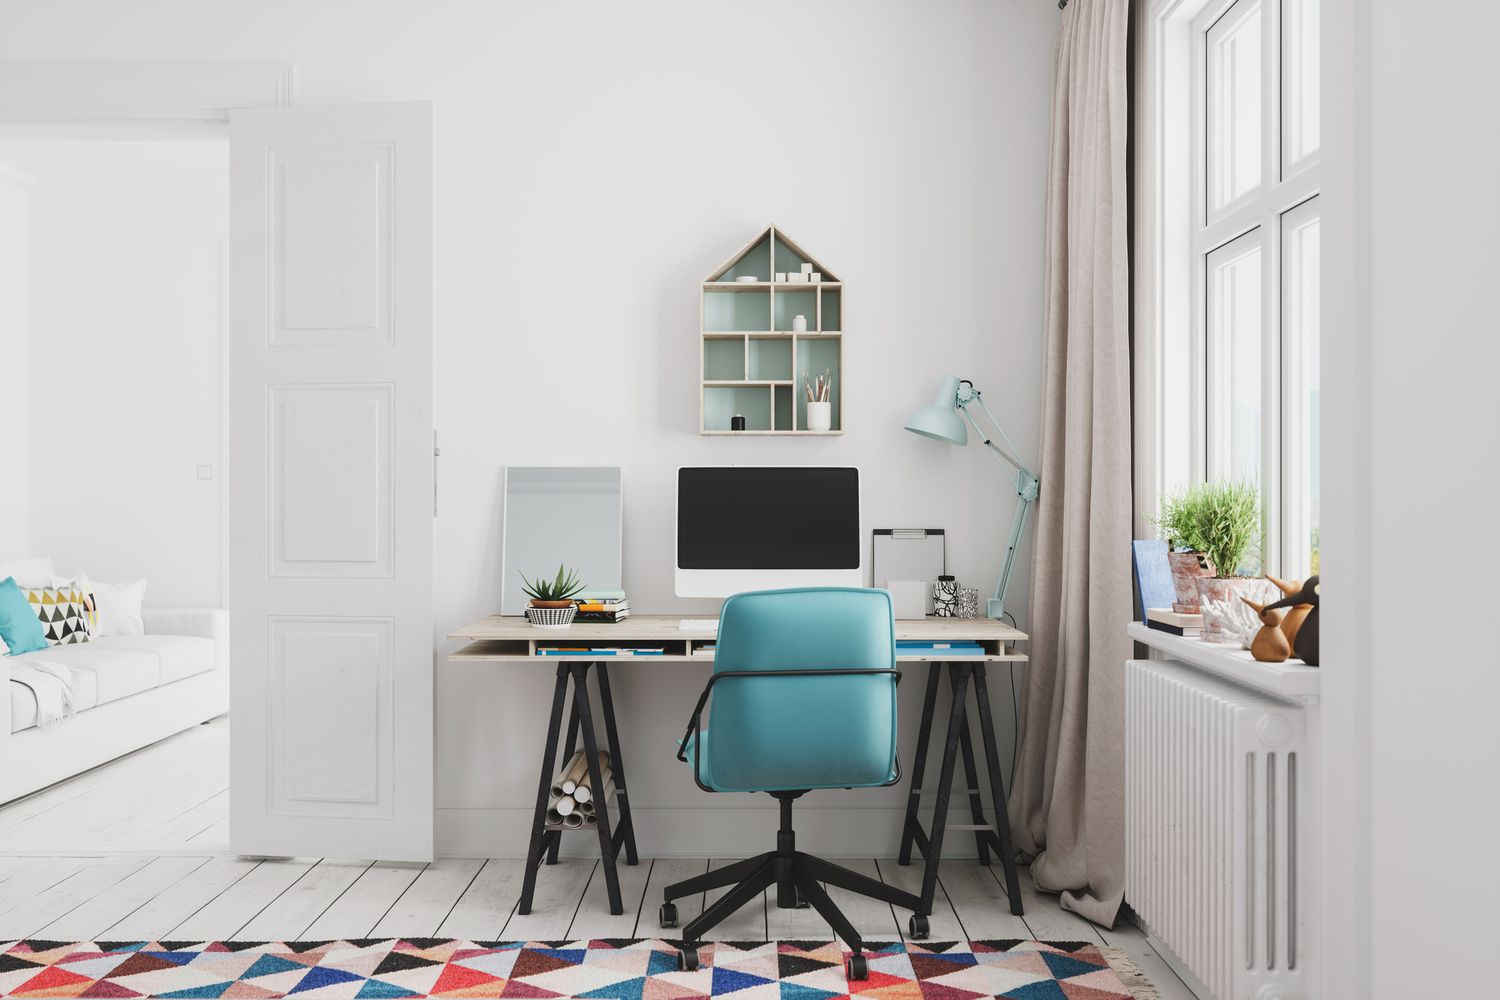 Heimbüroeinrichtung mit buntem Teppich und blauem Stuhl